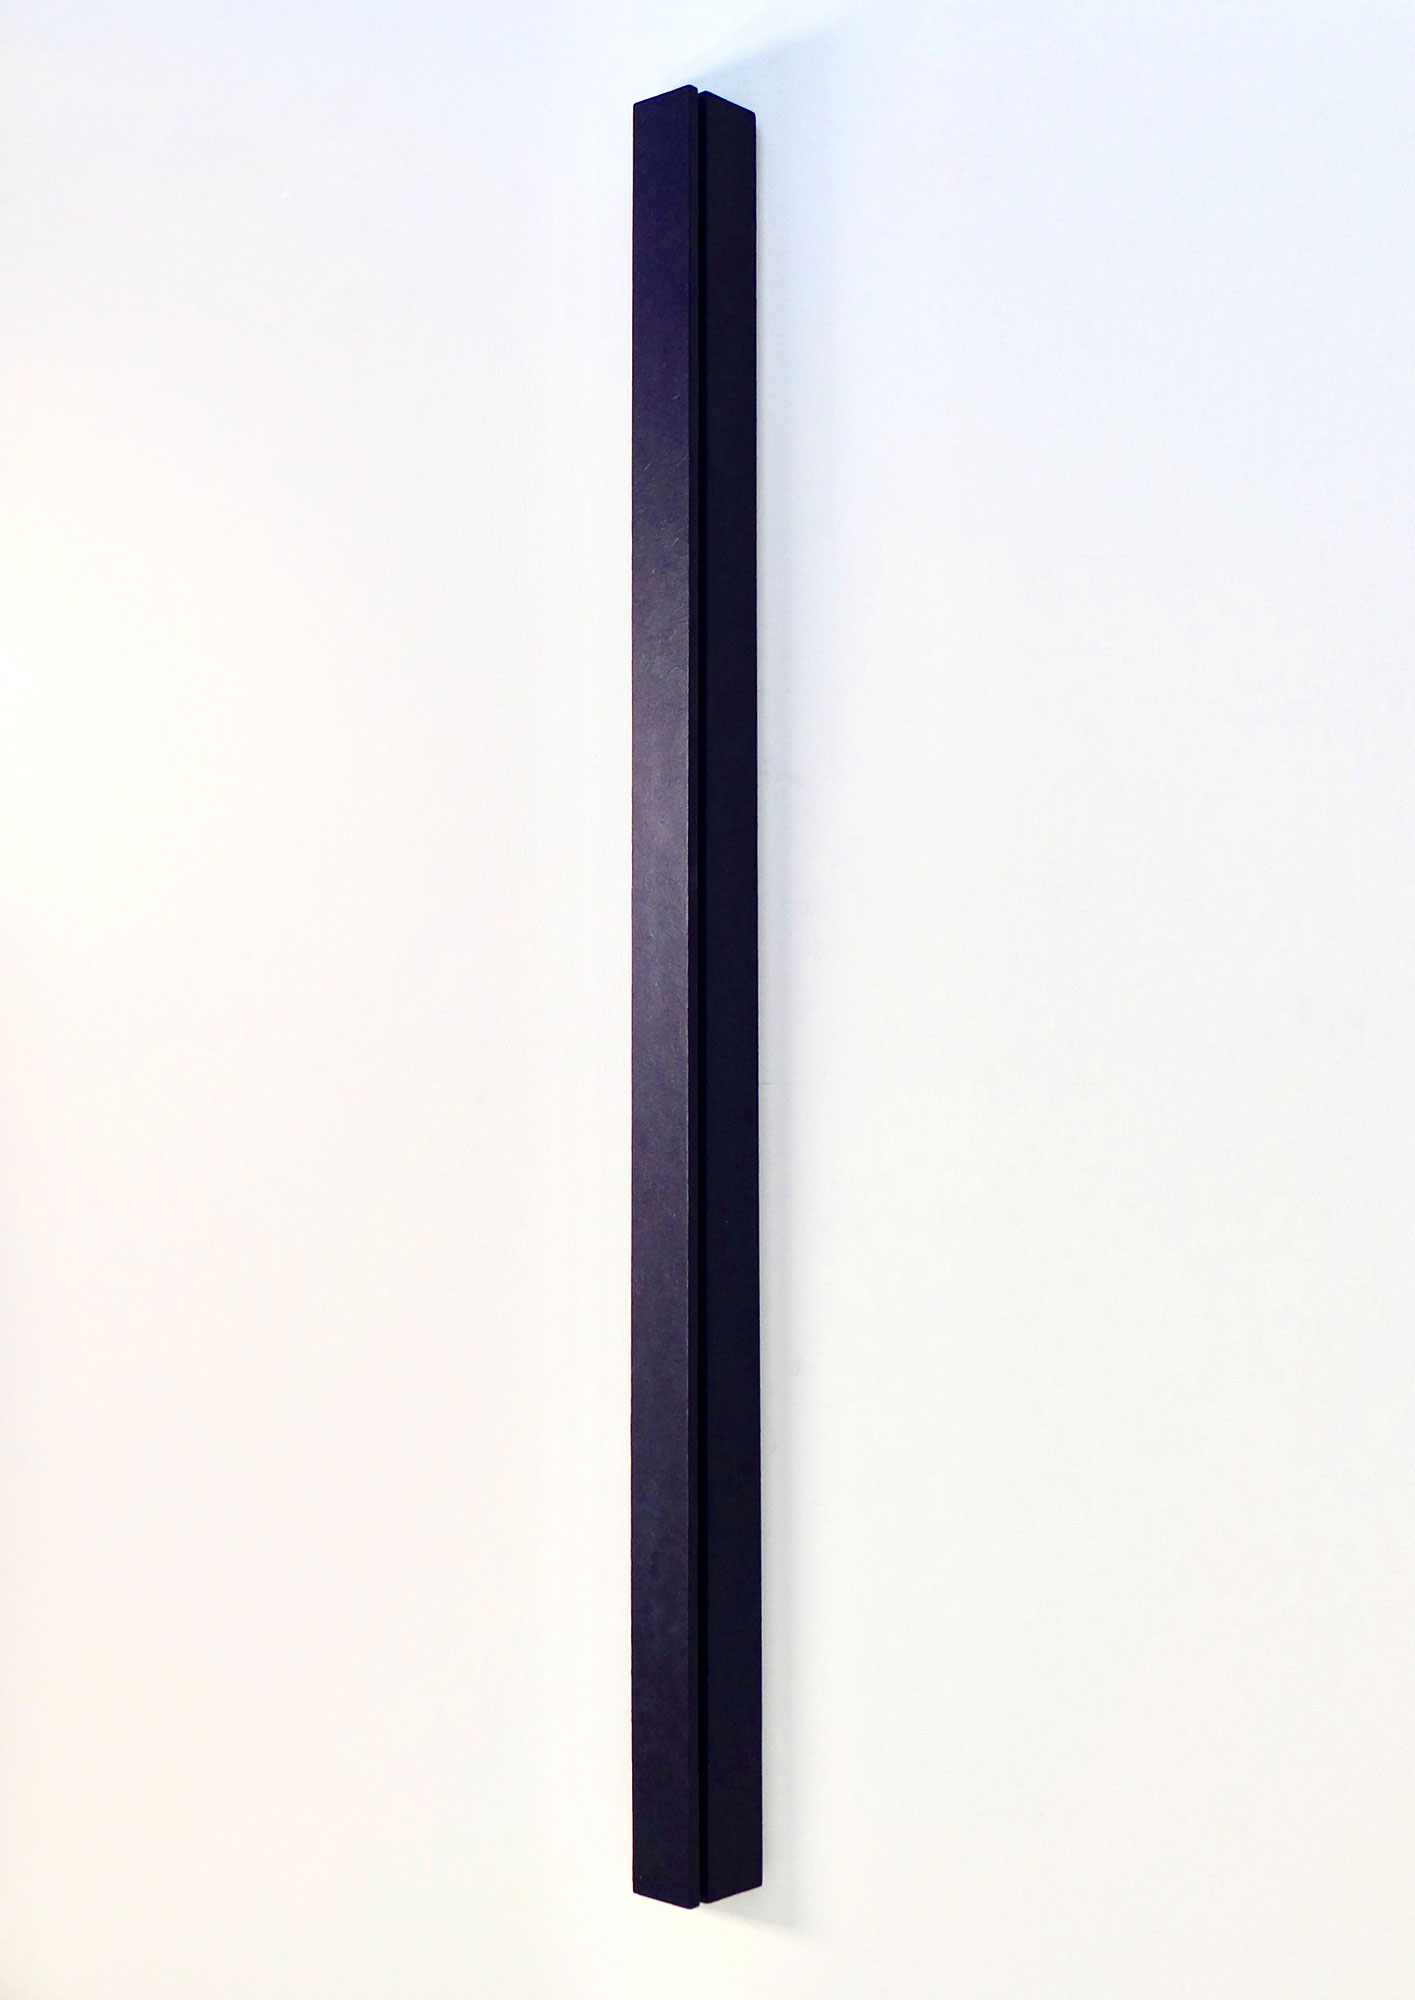 Kenneth Dingwall, Contain, 1981, acrylic on wood, 160cm x 11.5cm x 8cm